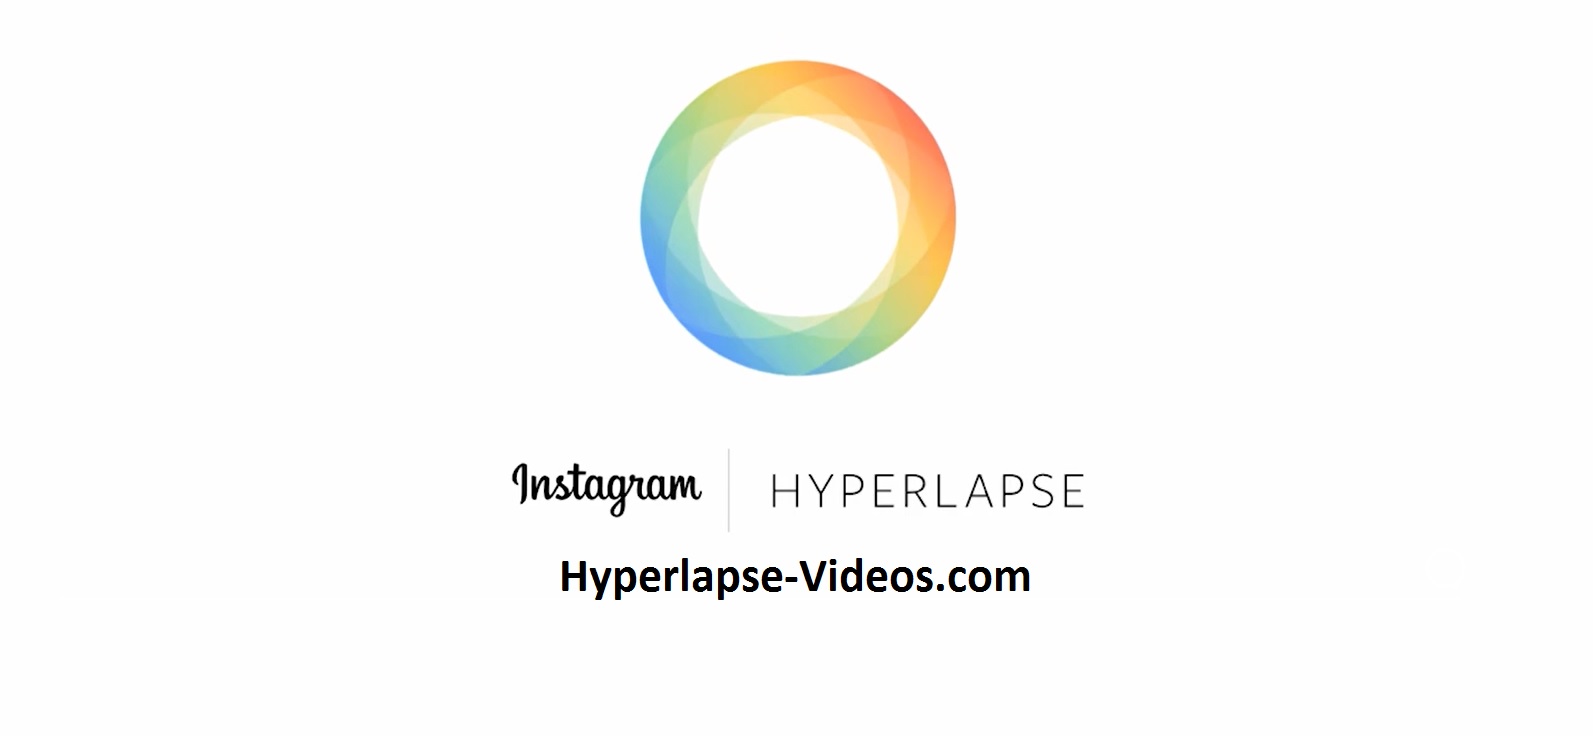 Hyperlapse from Instagram - Ein must have!